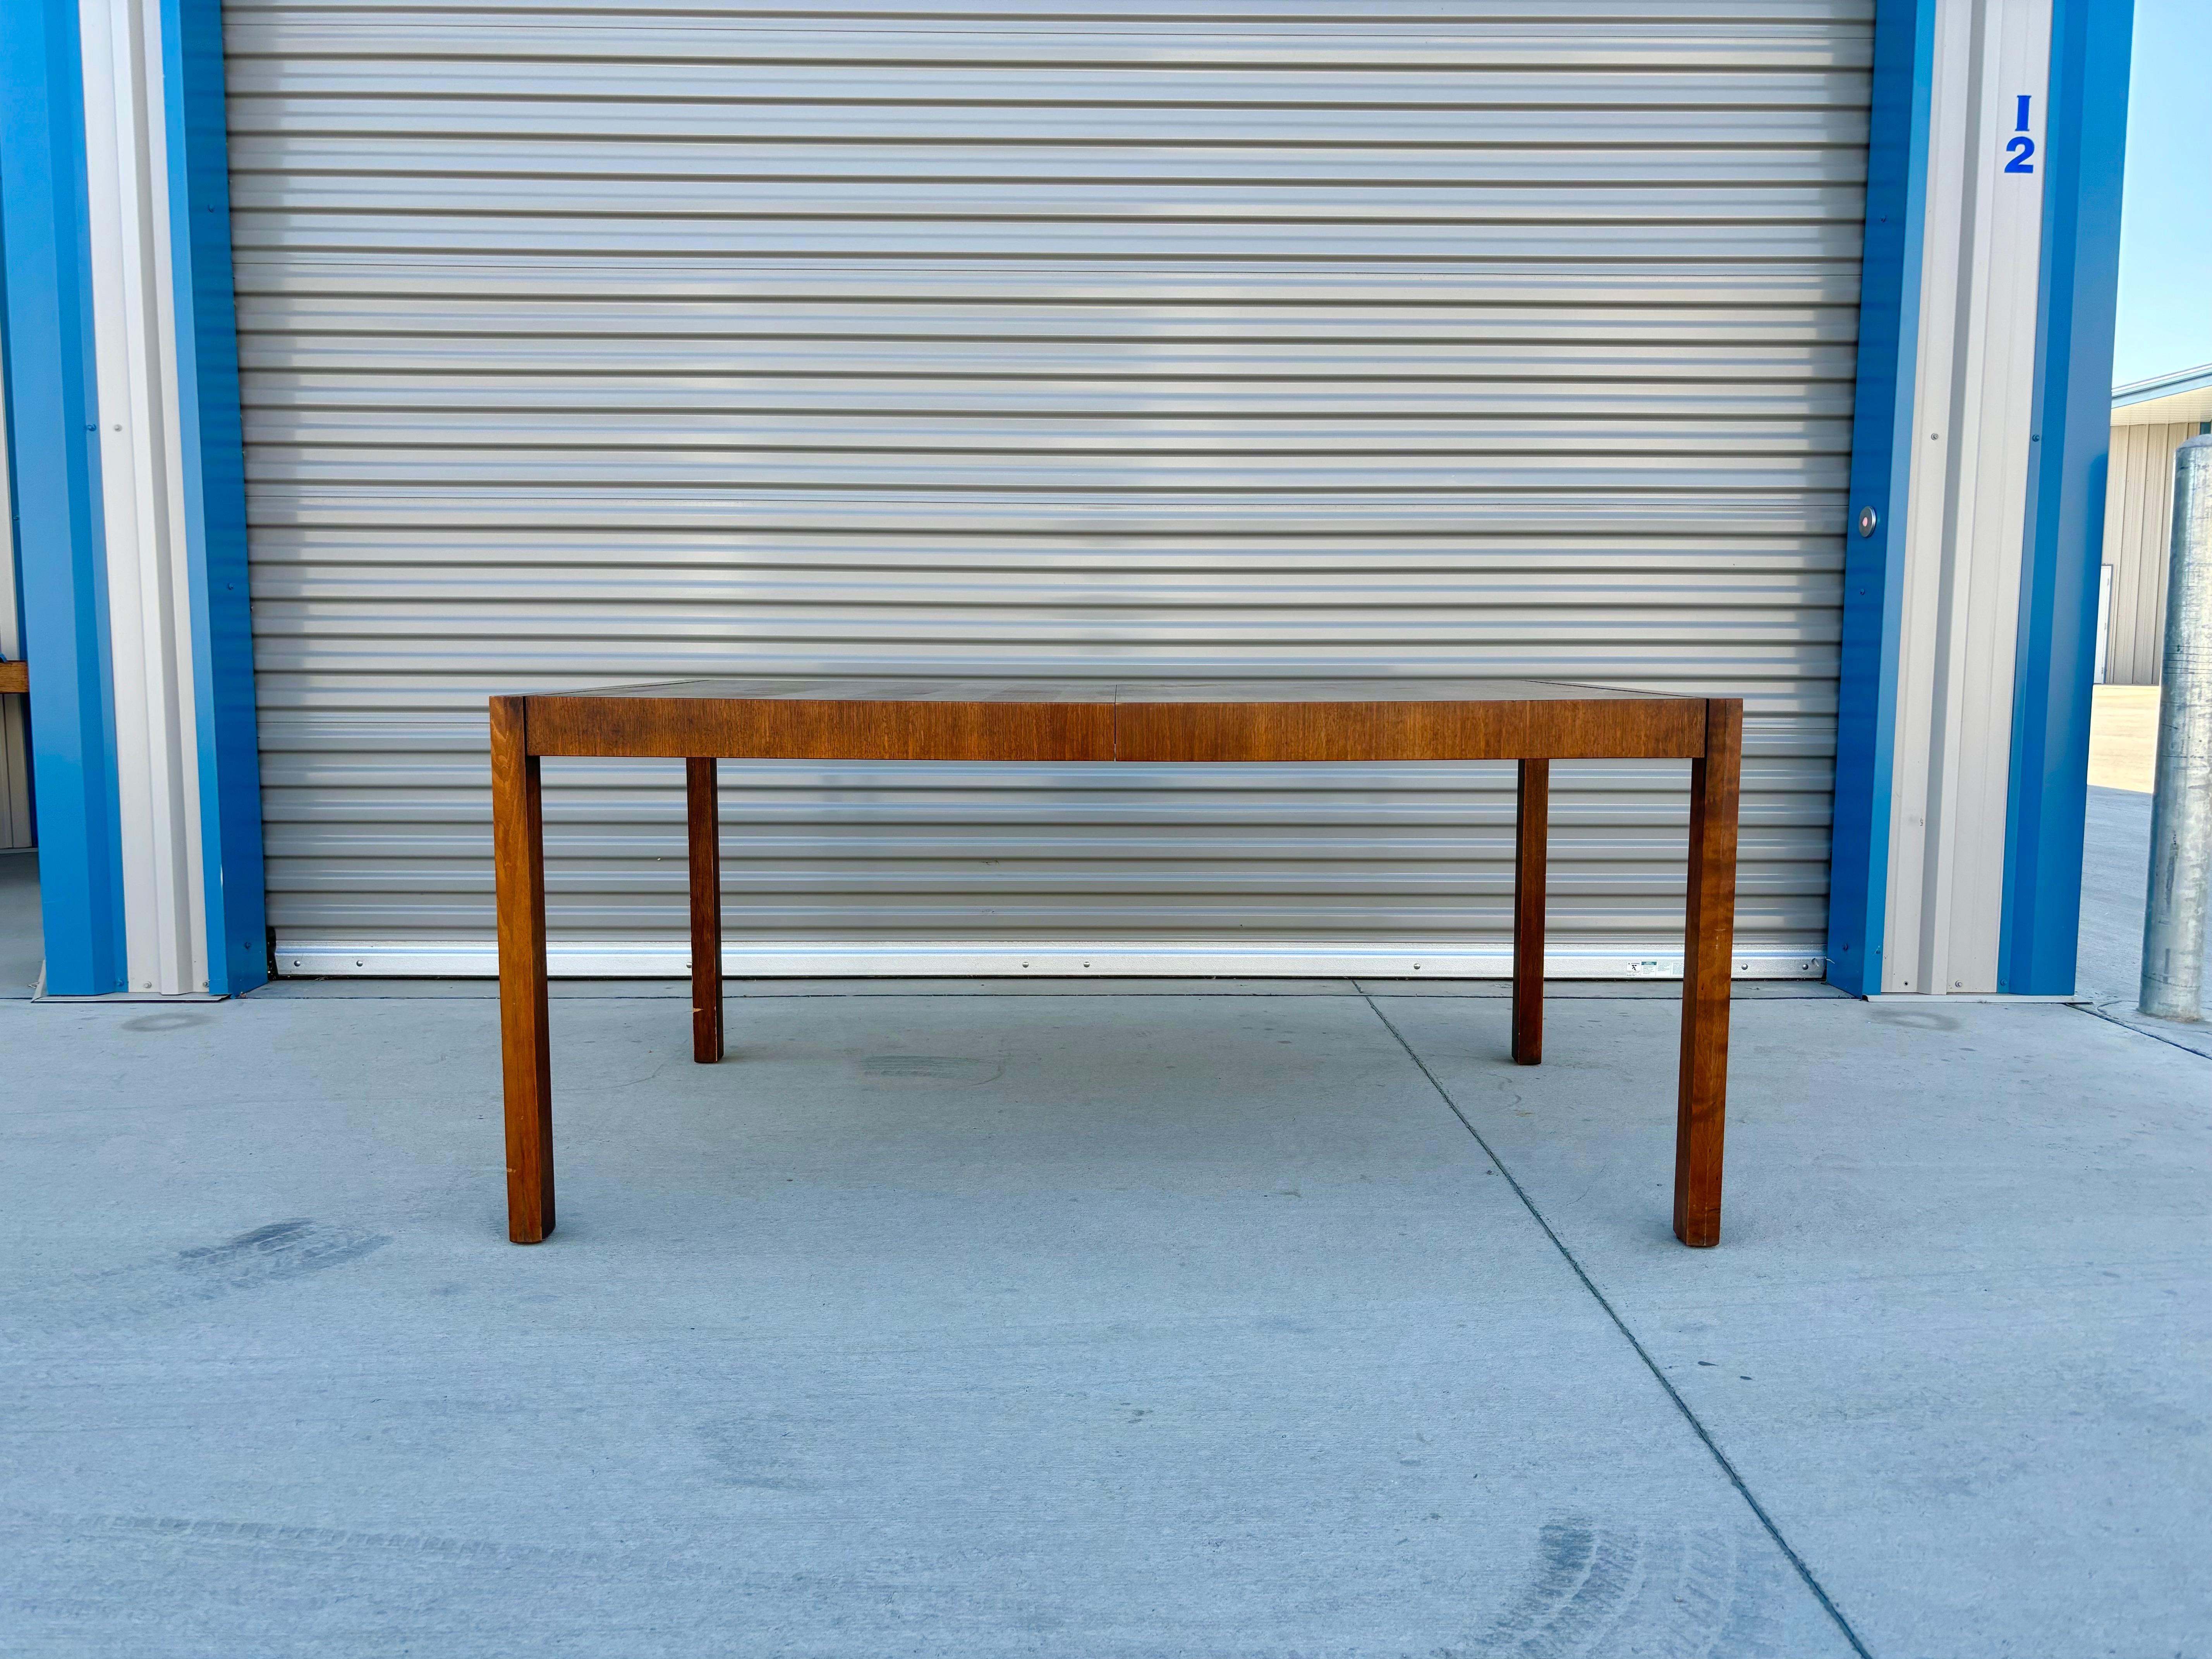 Esstisch aus der Mitte des Jahrhunderts, der in den Vereinigten Staaten um 1950 entworfen und hergestellt wurde. Der Tisch ist aus einem schönen Nussbaumgestell gefertigt und hat zwei Blätter, die hinzugefügt werden können, um den Tisch zu